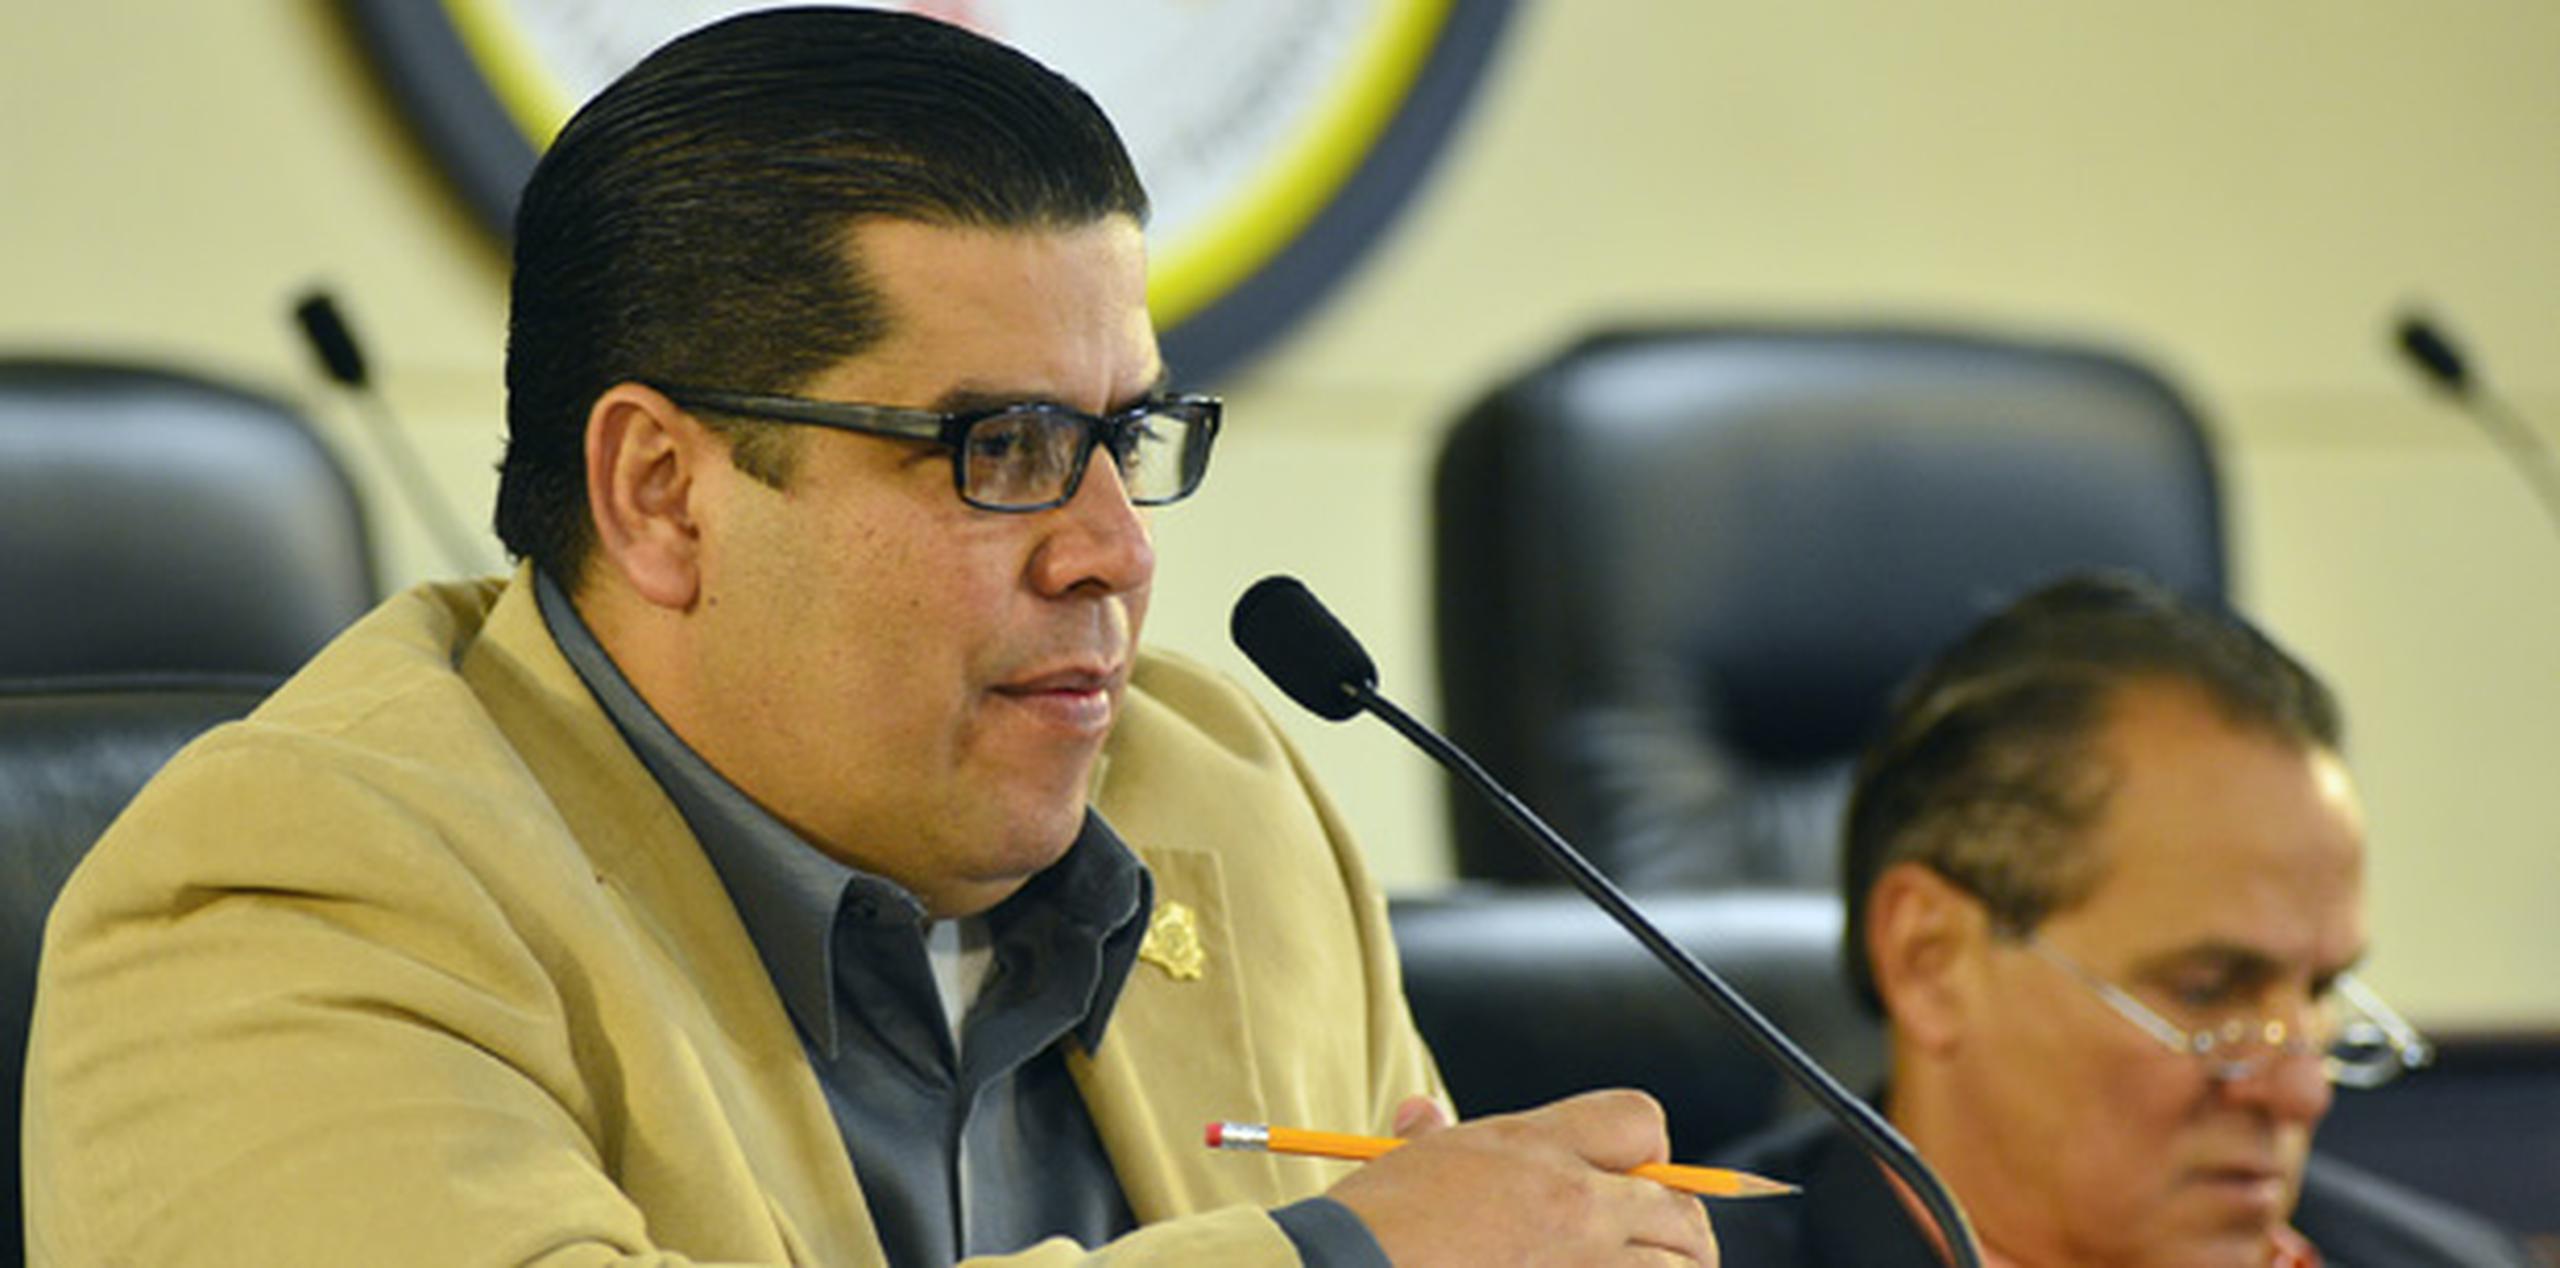 Hernández, afiliado al Partido Popular Democrático, confirmó que se redujo el peso que tendría originalmente el impuesto sobre ventas y uso en transacciones entre negocios (B2B). (ARchivo)